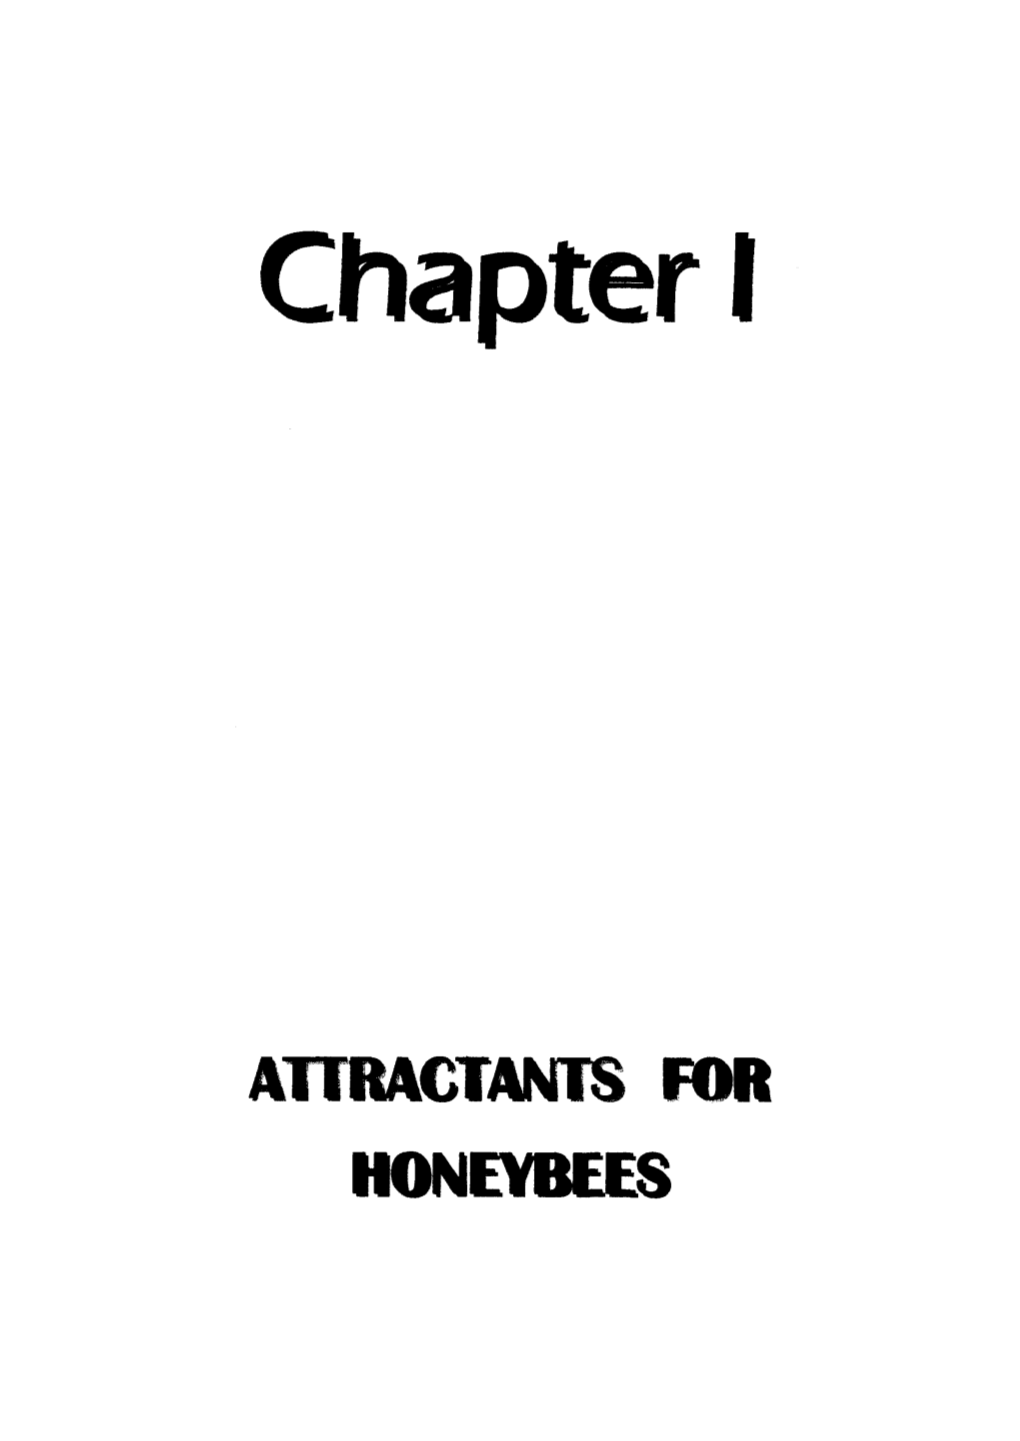 Attractants for Honeybees Attractants for Honeybees